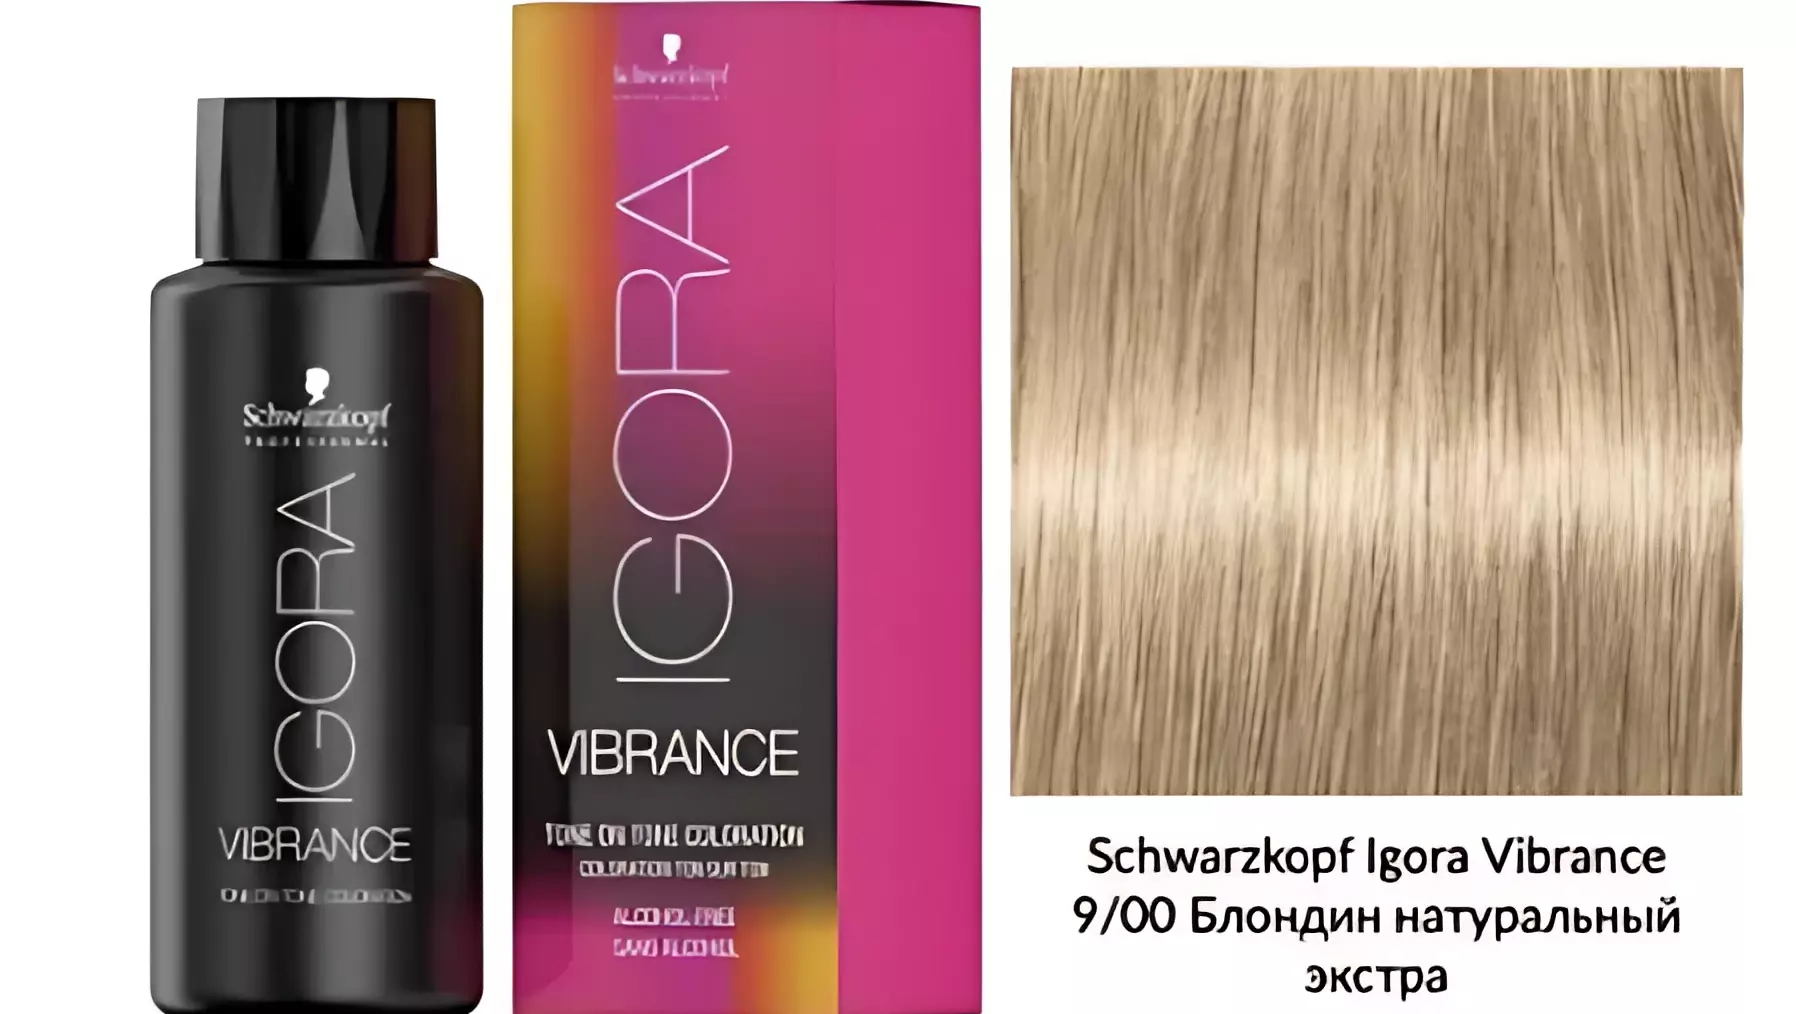 Краска для волос Igora Vibrance хорошо ложится на любые волосы и придает им натуральный блеск